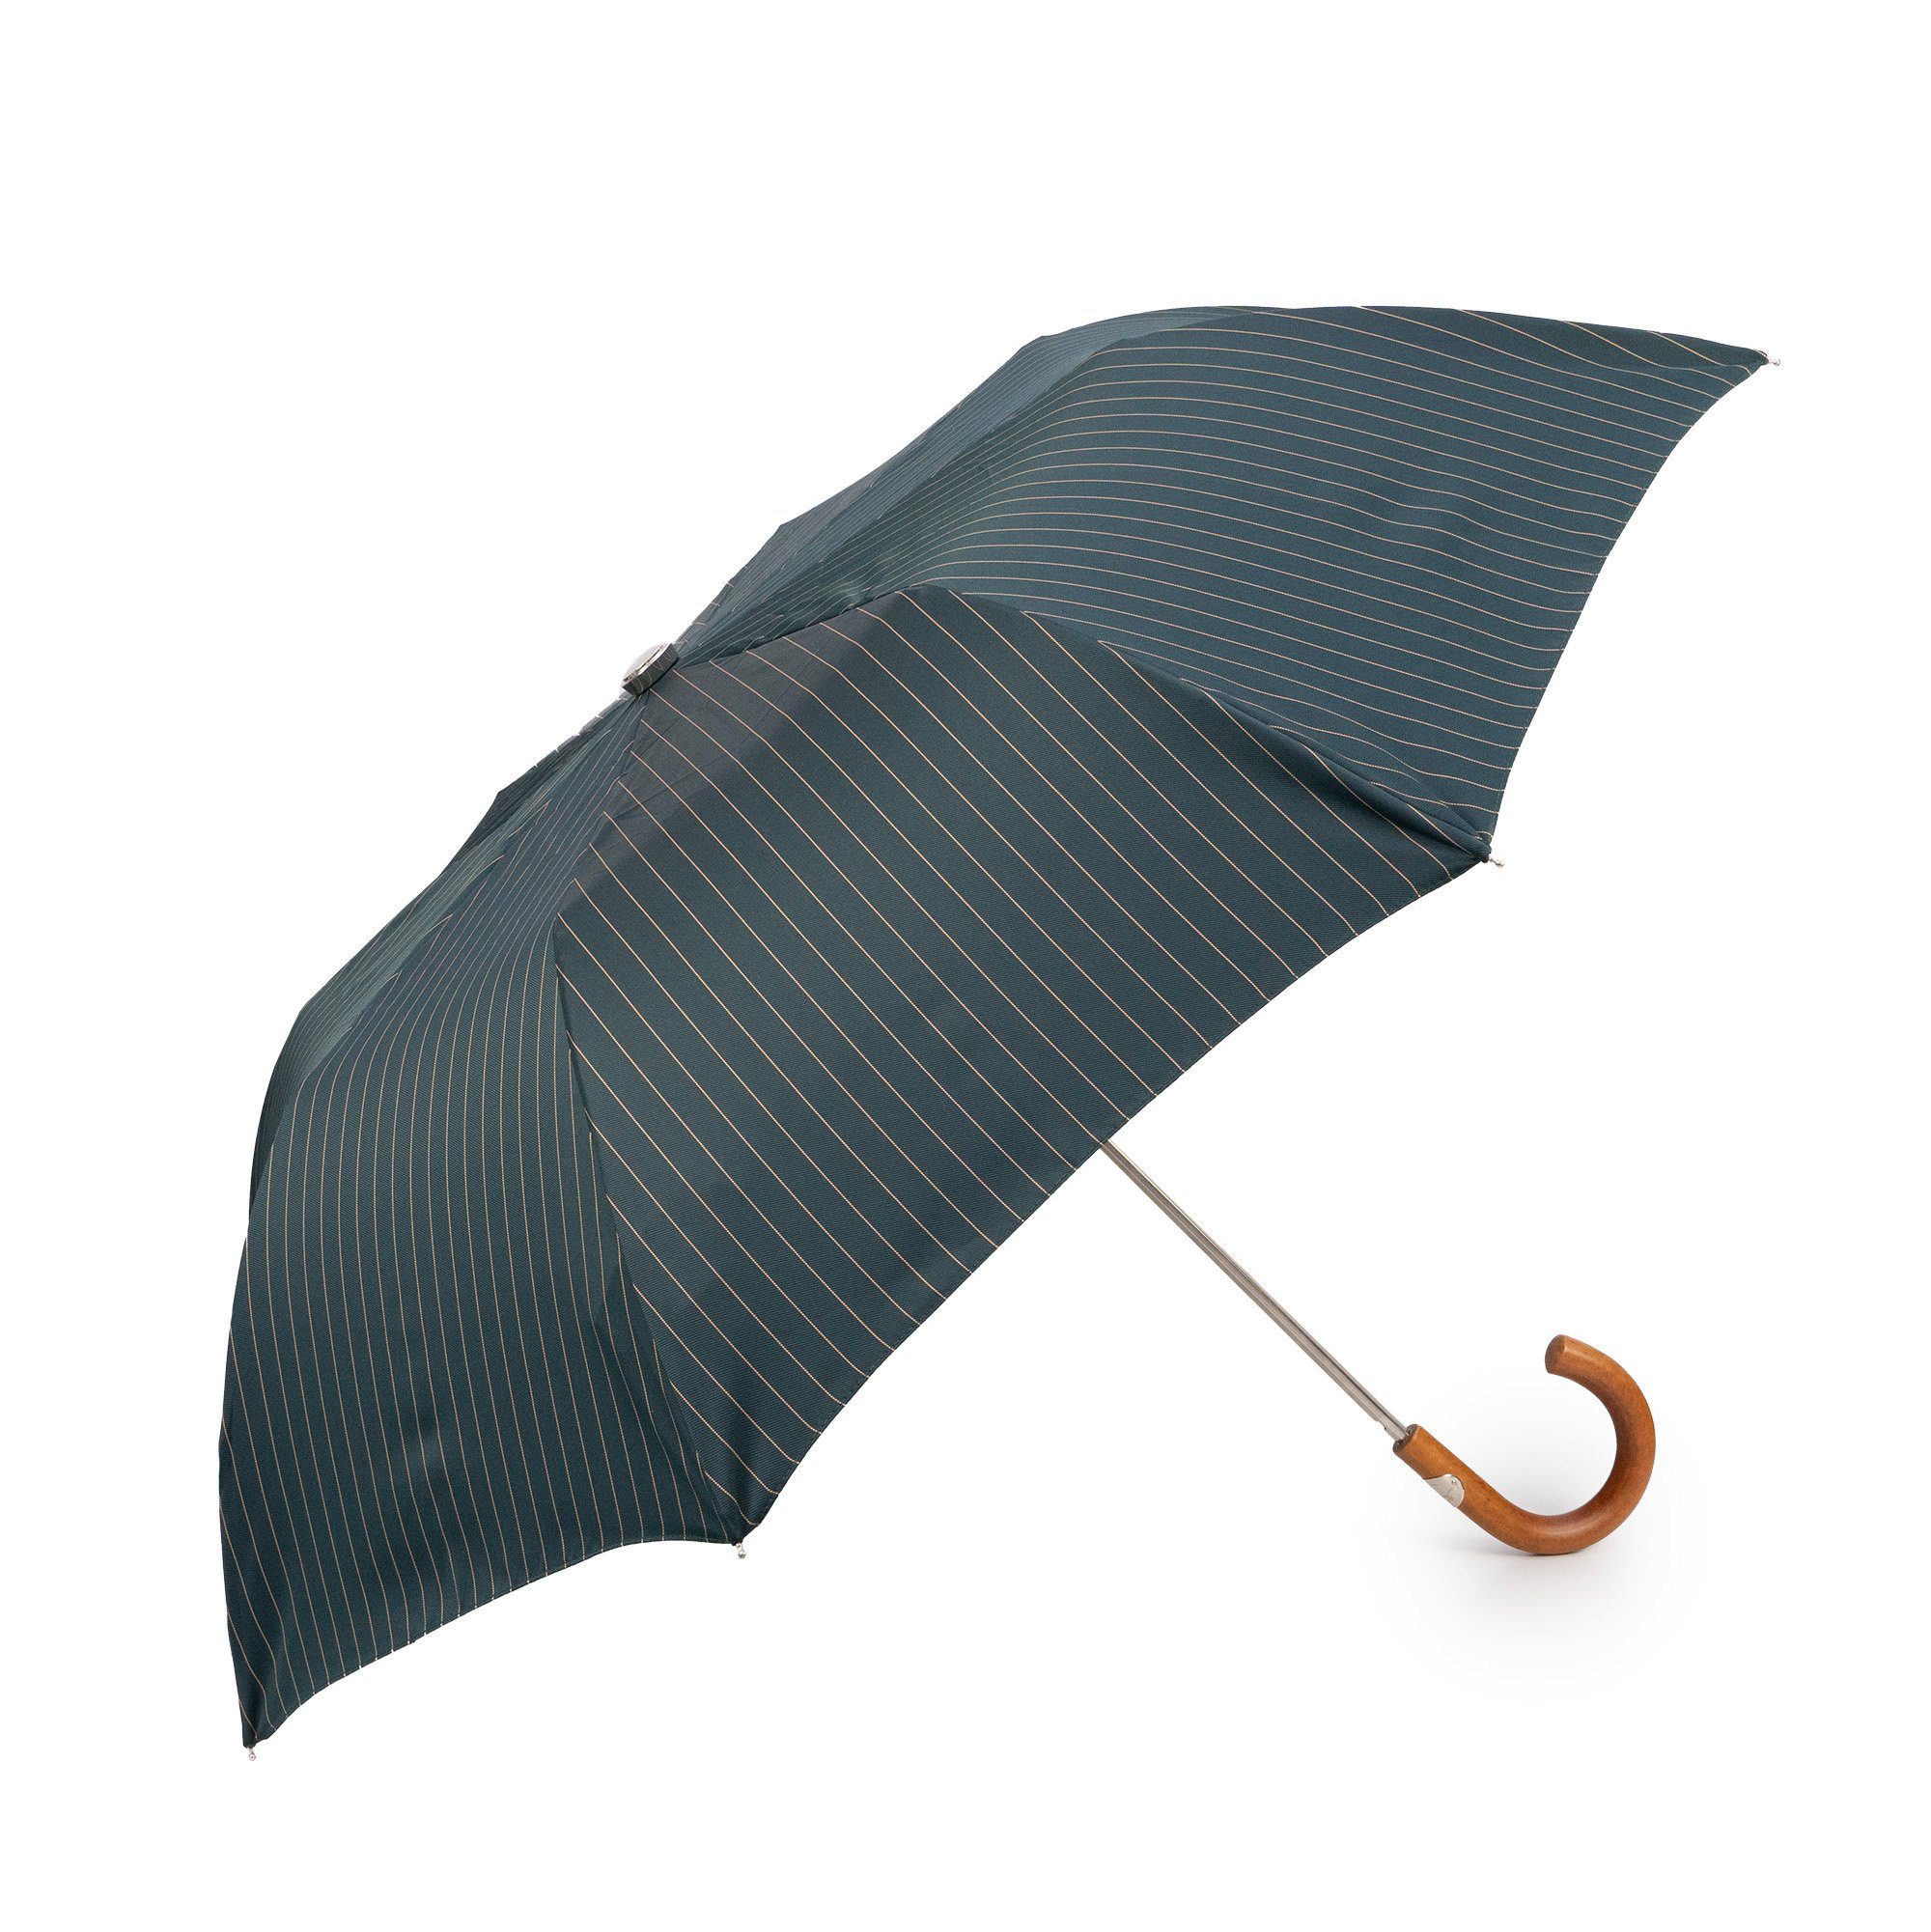 Luxus-Regenschirm, Italy gestreift, Maglia Holzgriff, Taschenregenschirm, Handmade Francesco in